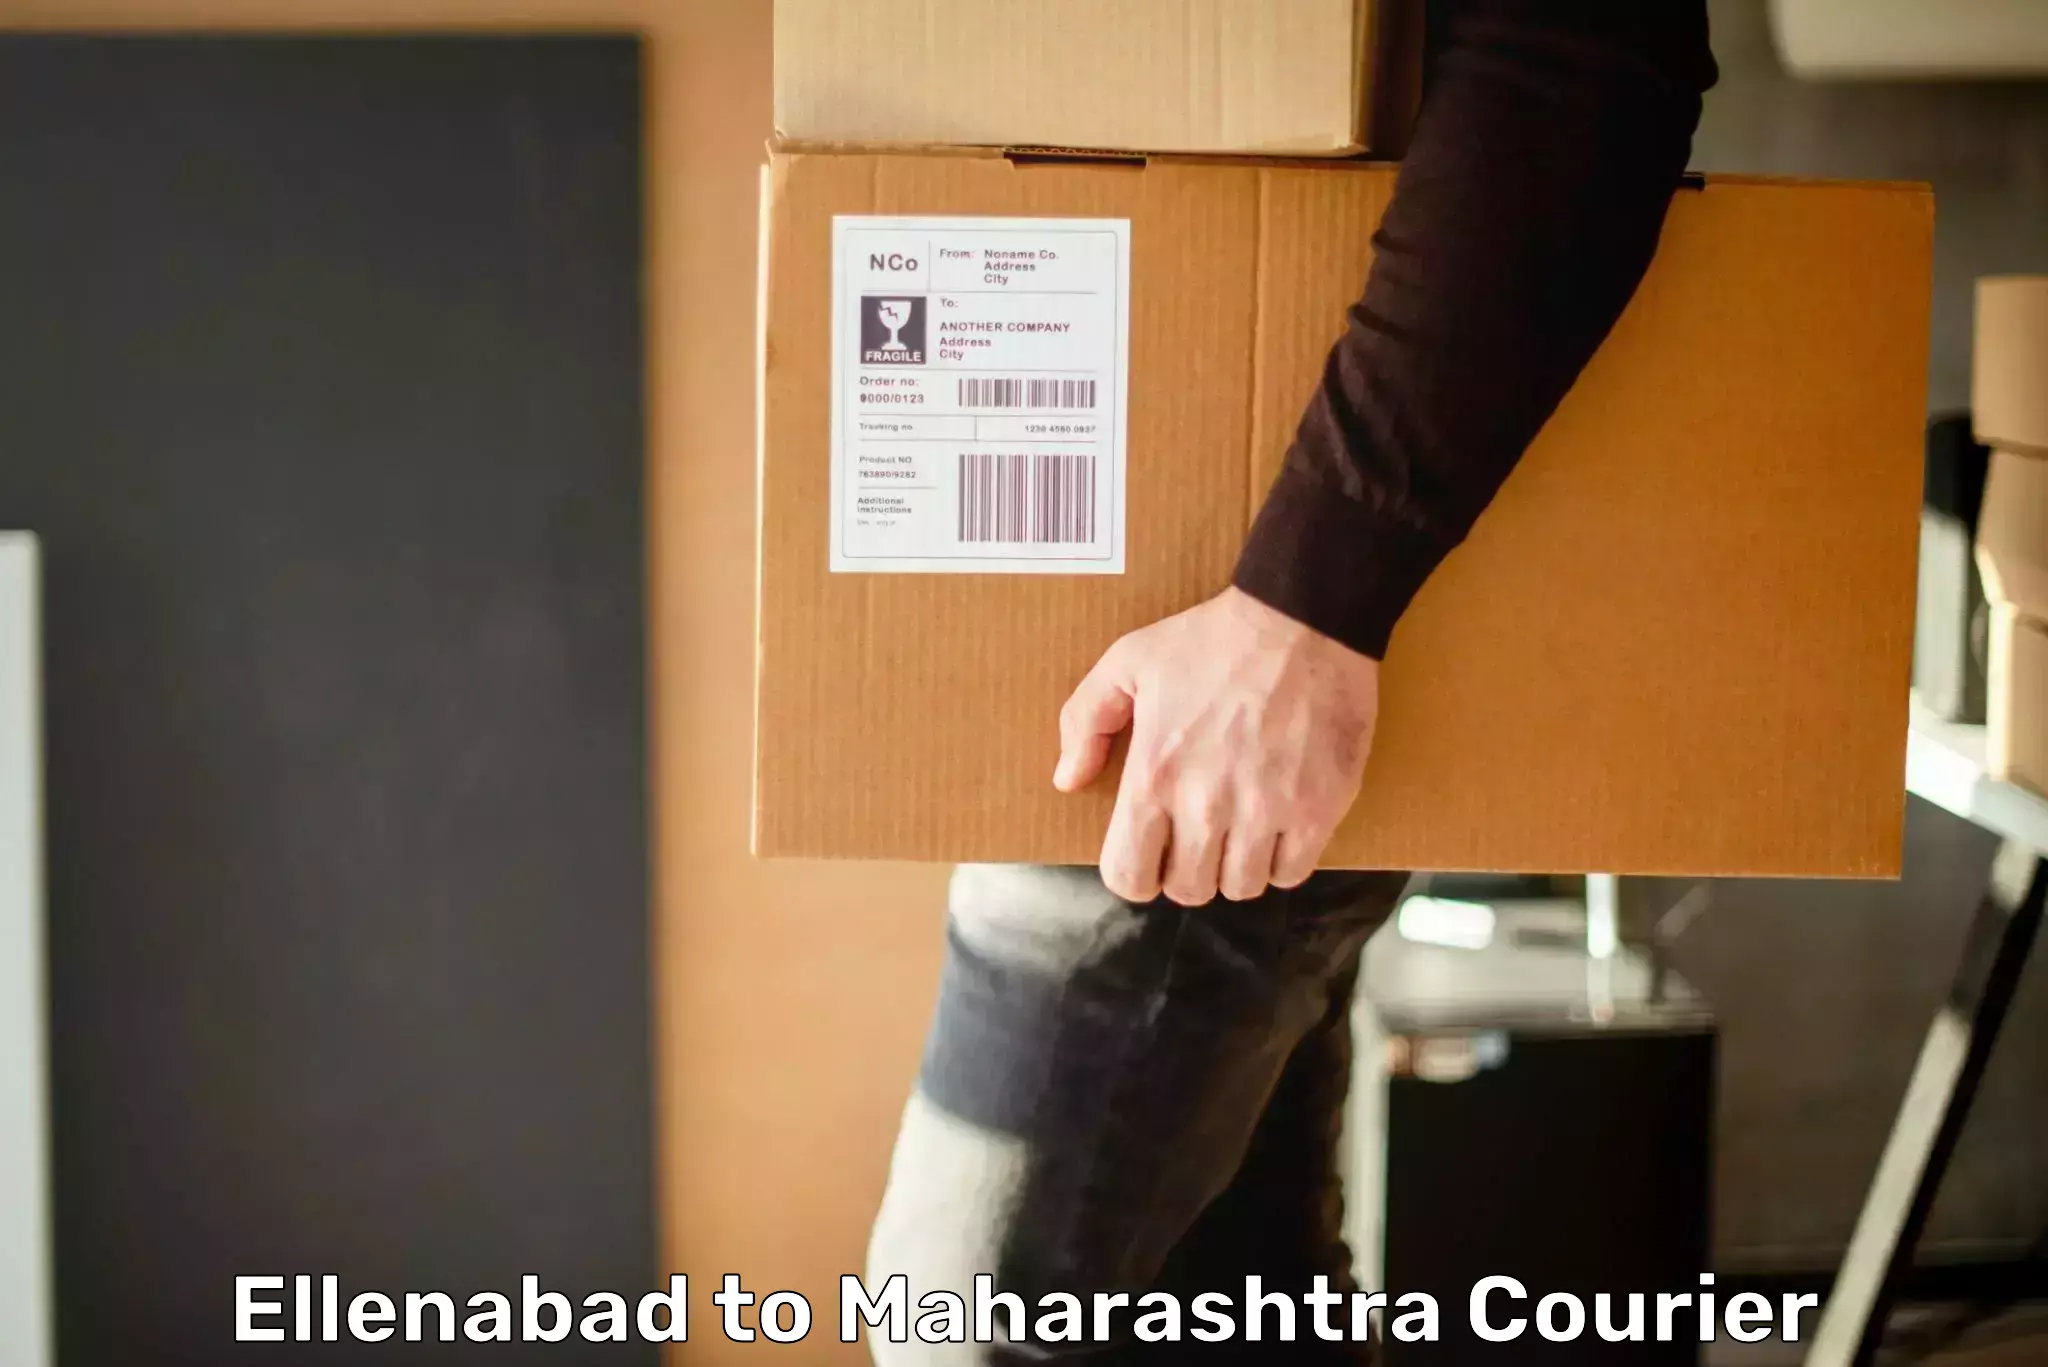 Express delivery capabilities Ellenabad to Maharashtra